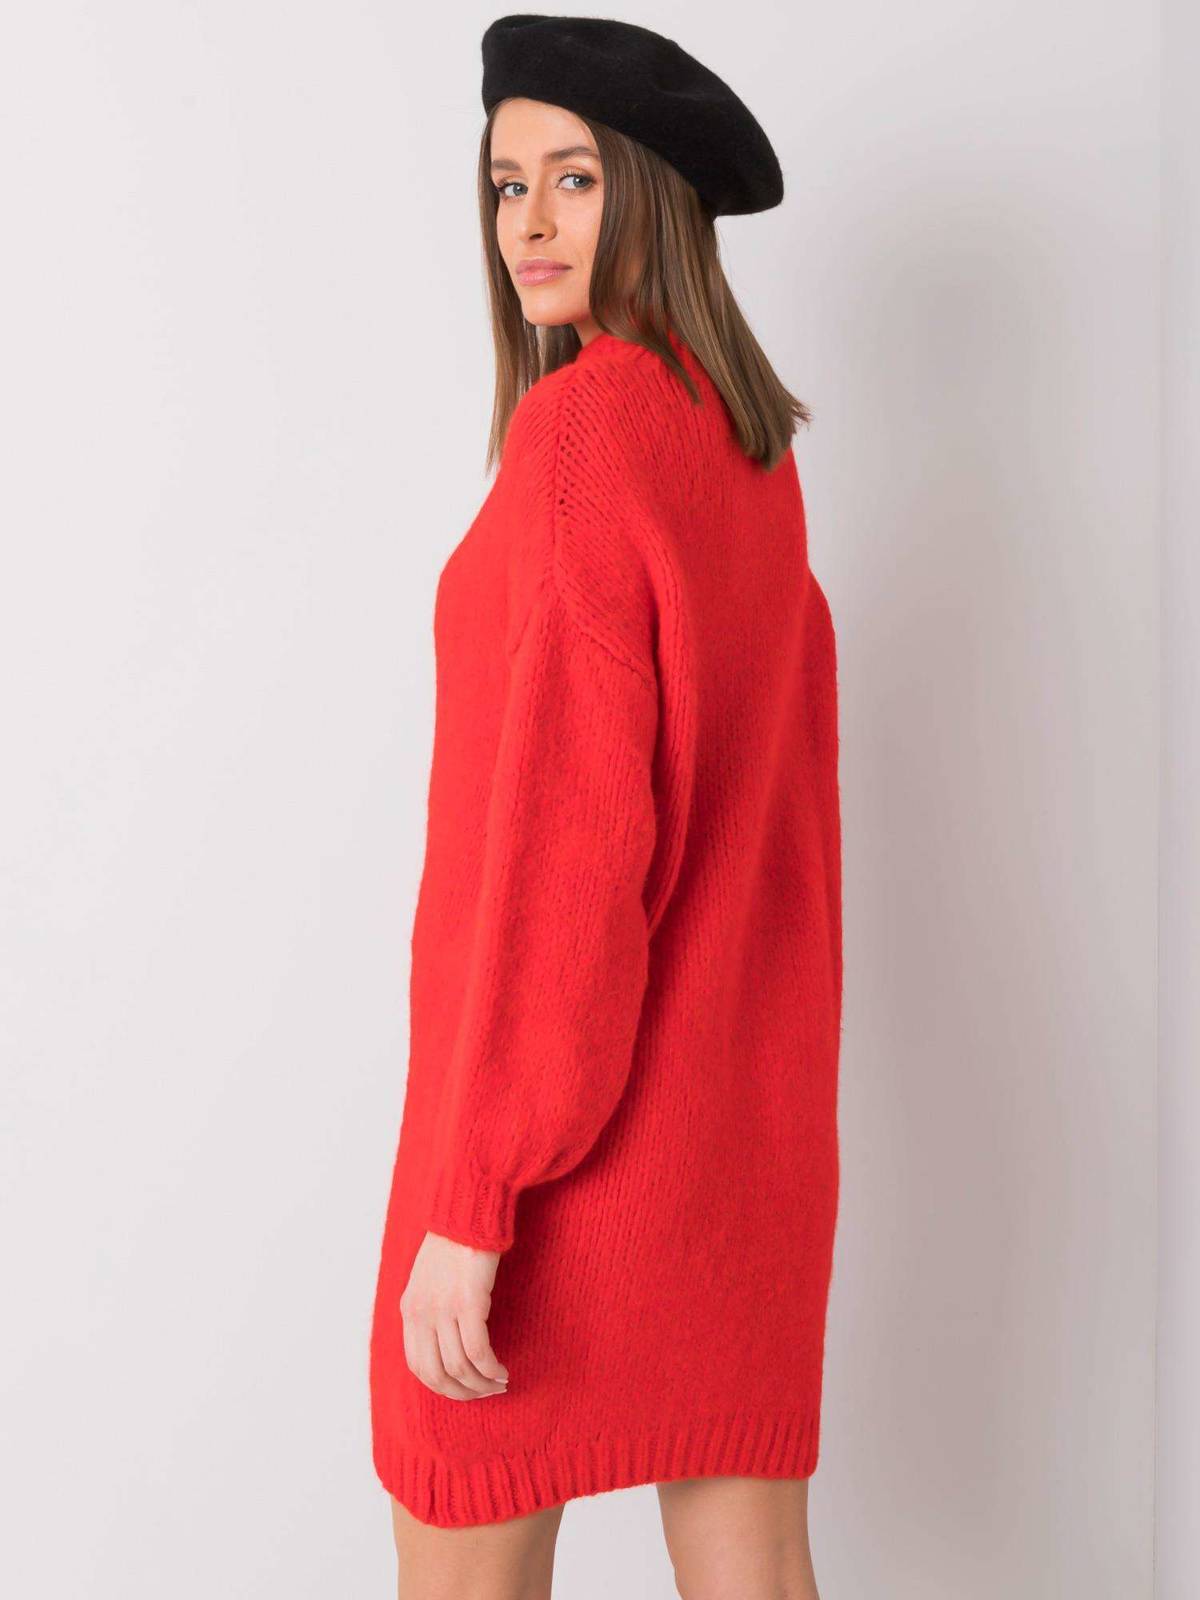 Sweter dzianinowa czerwony sukienka dekolt półgolf rękaw długi długość przed kolano